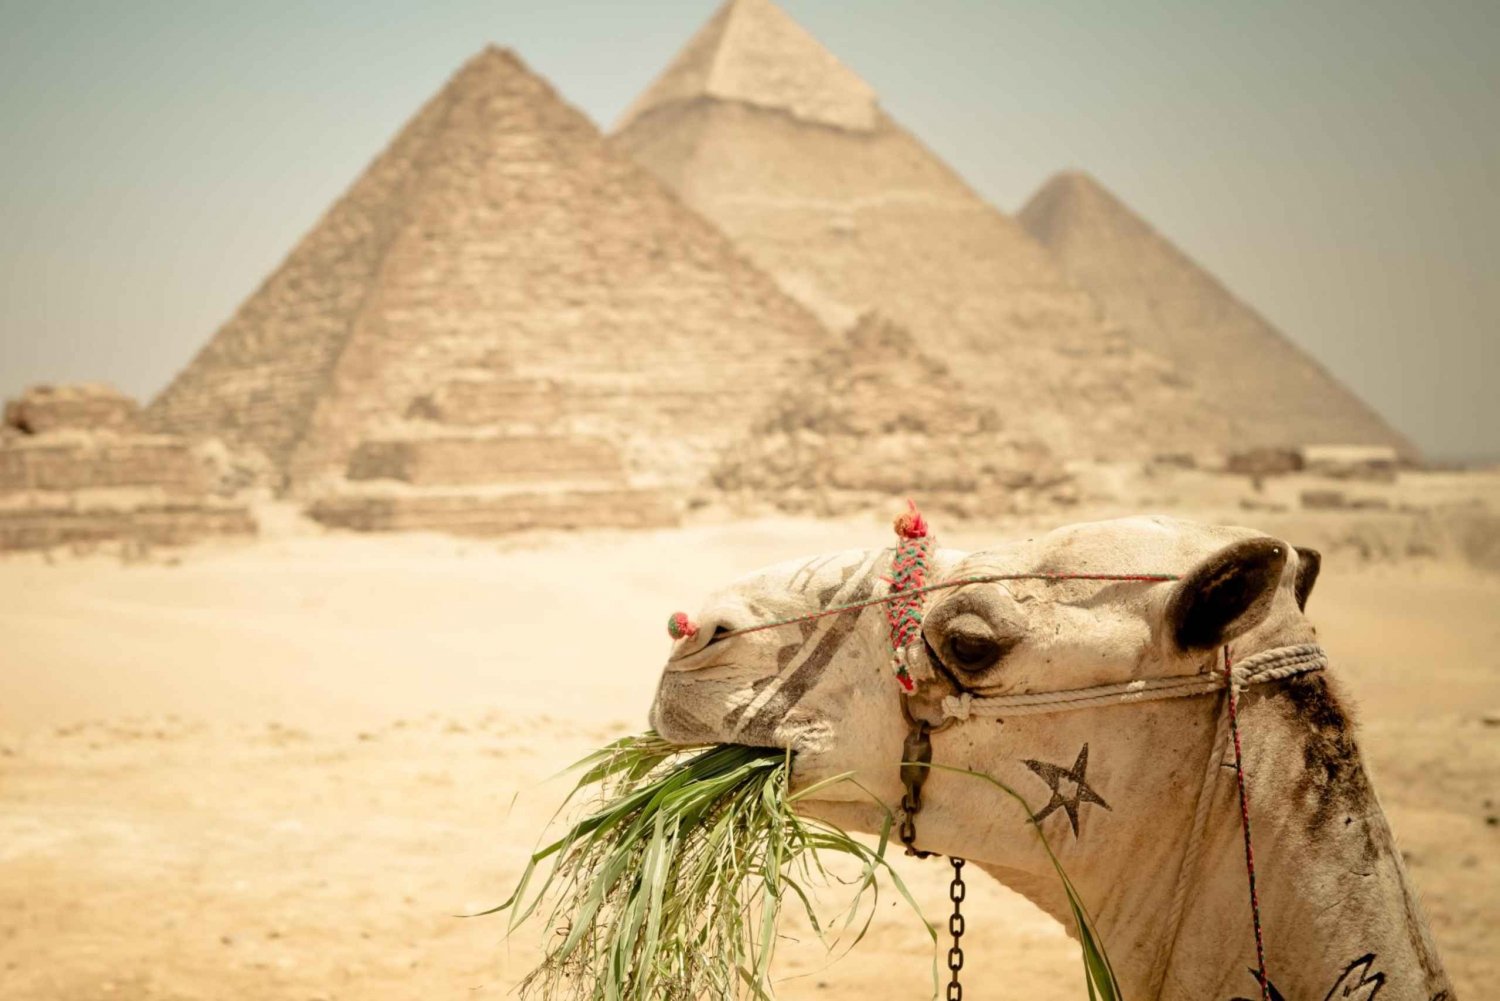 Kairo: Pyramidentour, Bootsfahrt und Mittagessen im Cafelucca